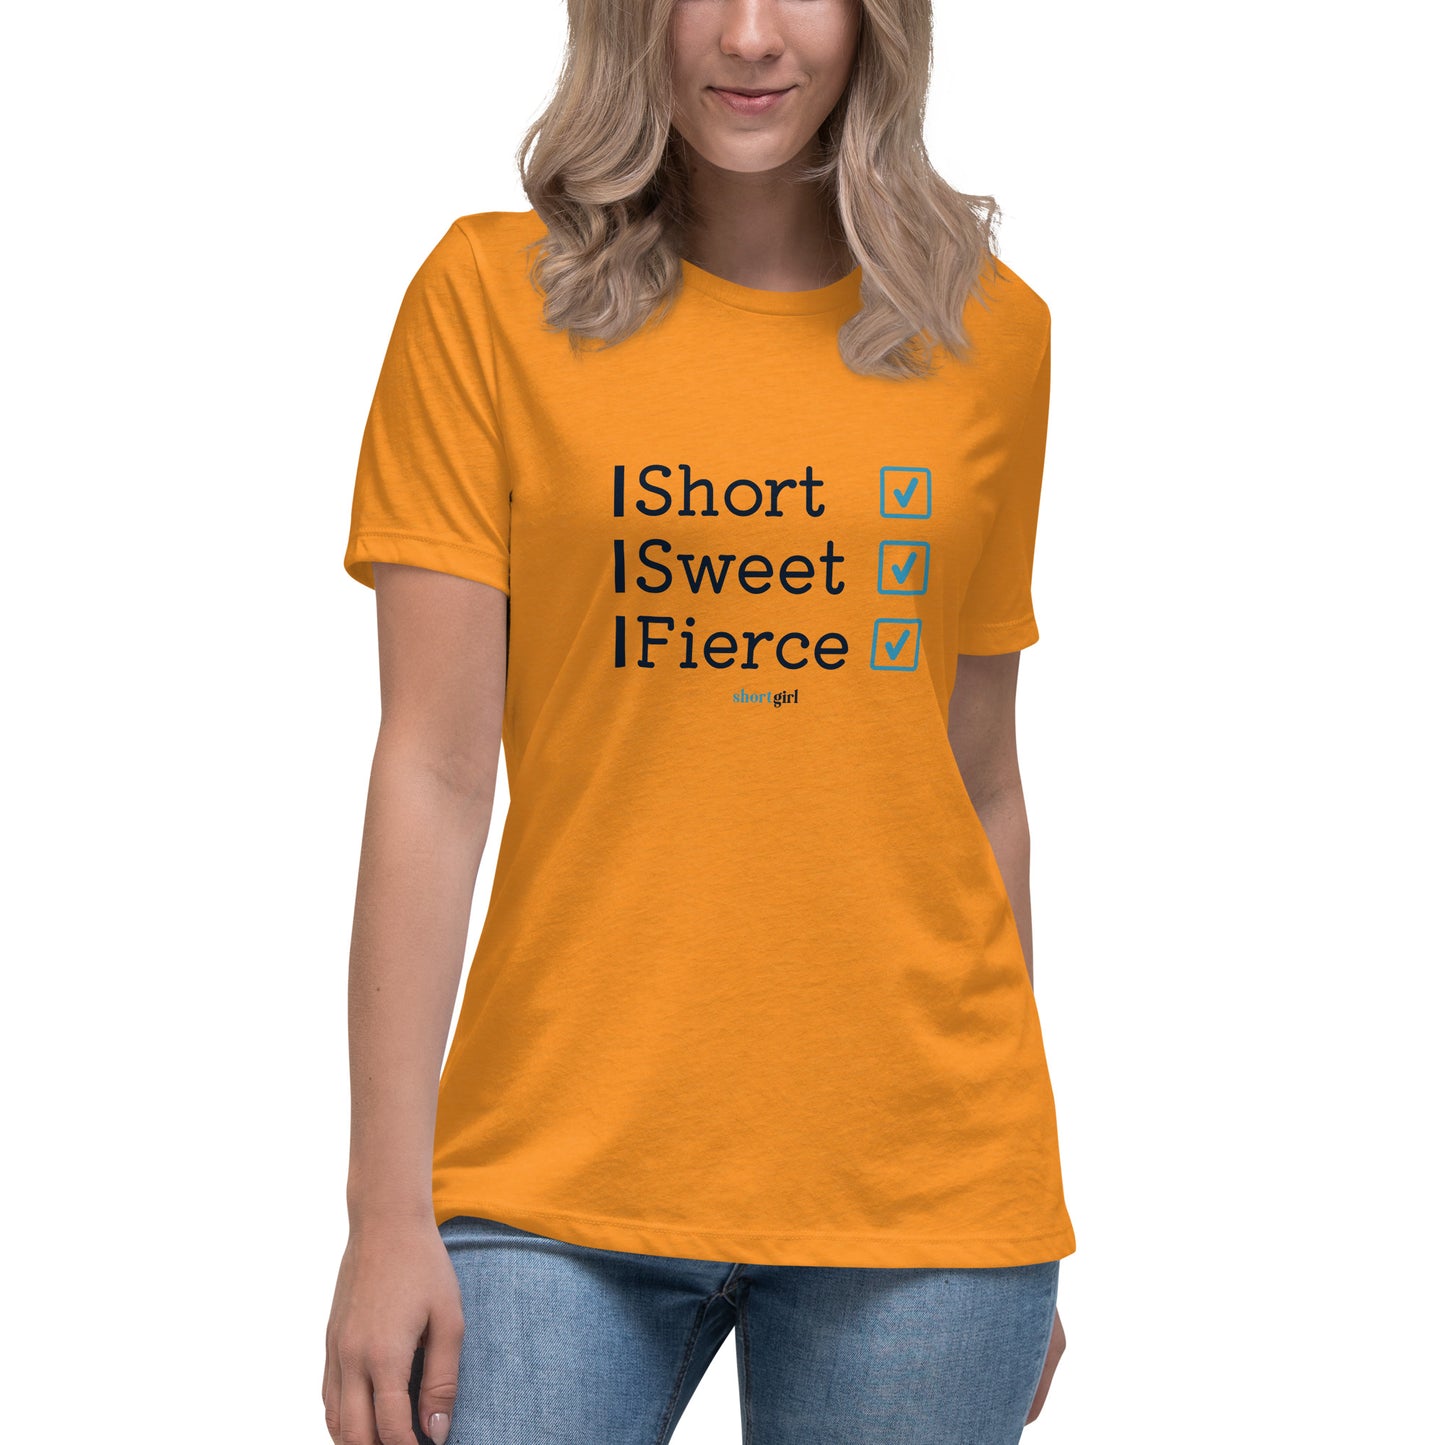 Women's Relaxed T-Shirt - Short Sweet Fierce